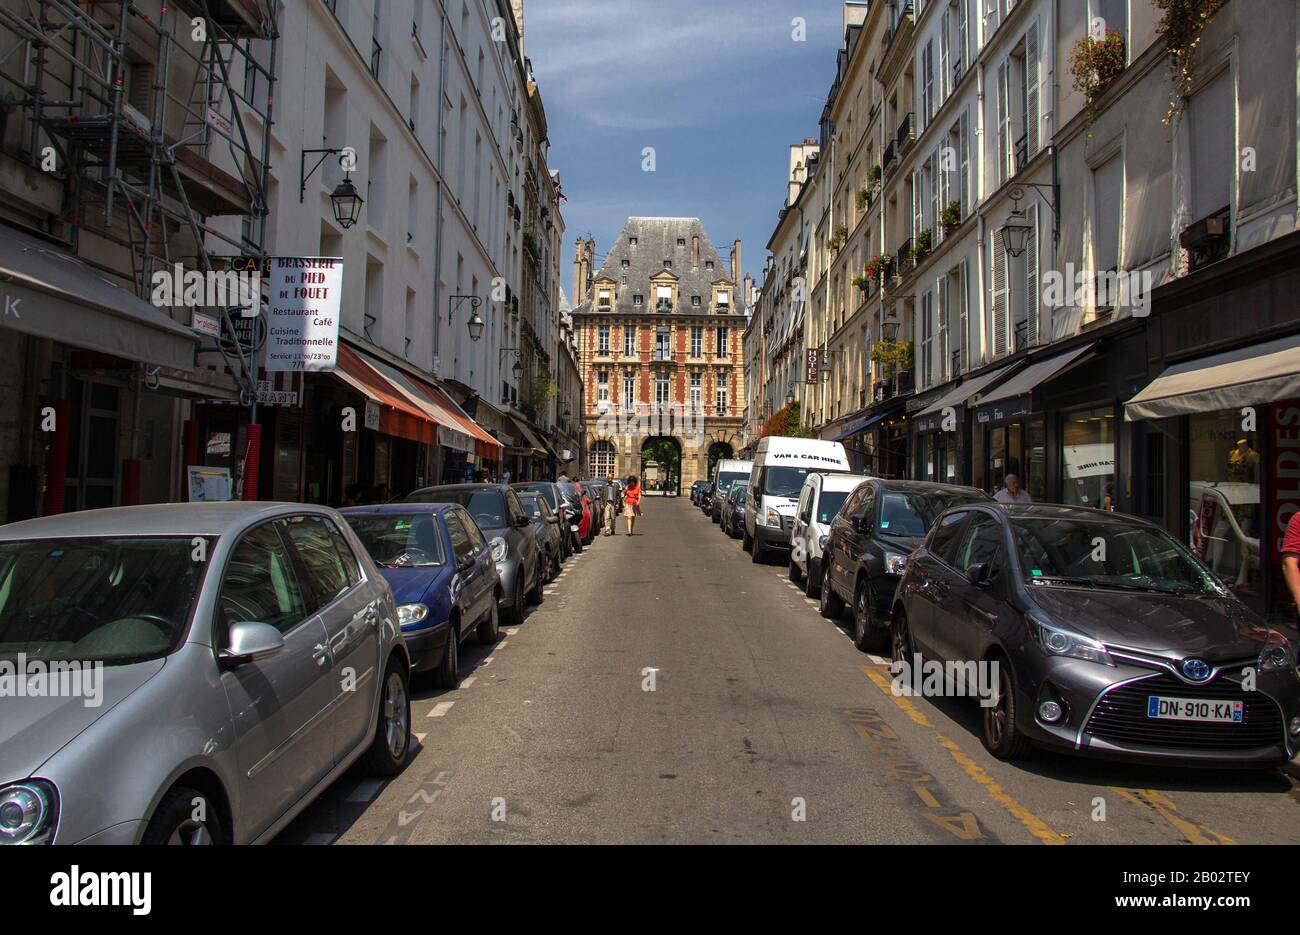 Place des Vosges building at the end of a street, Paris Stock Photo